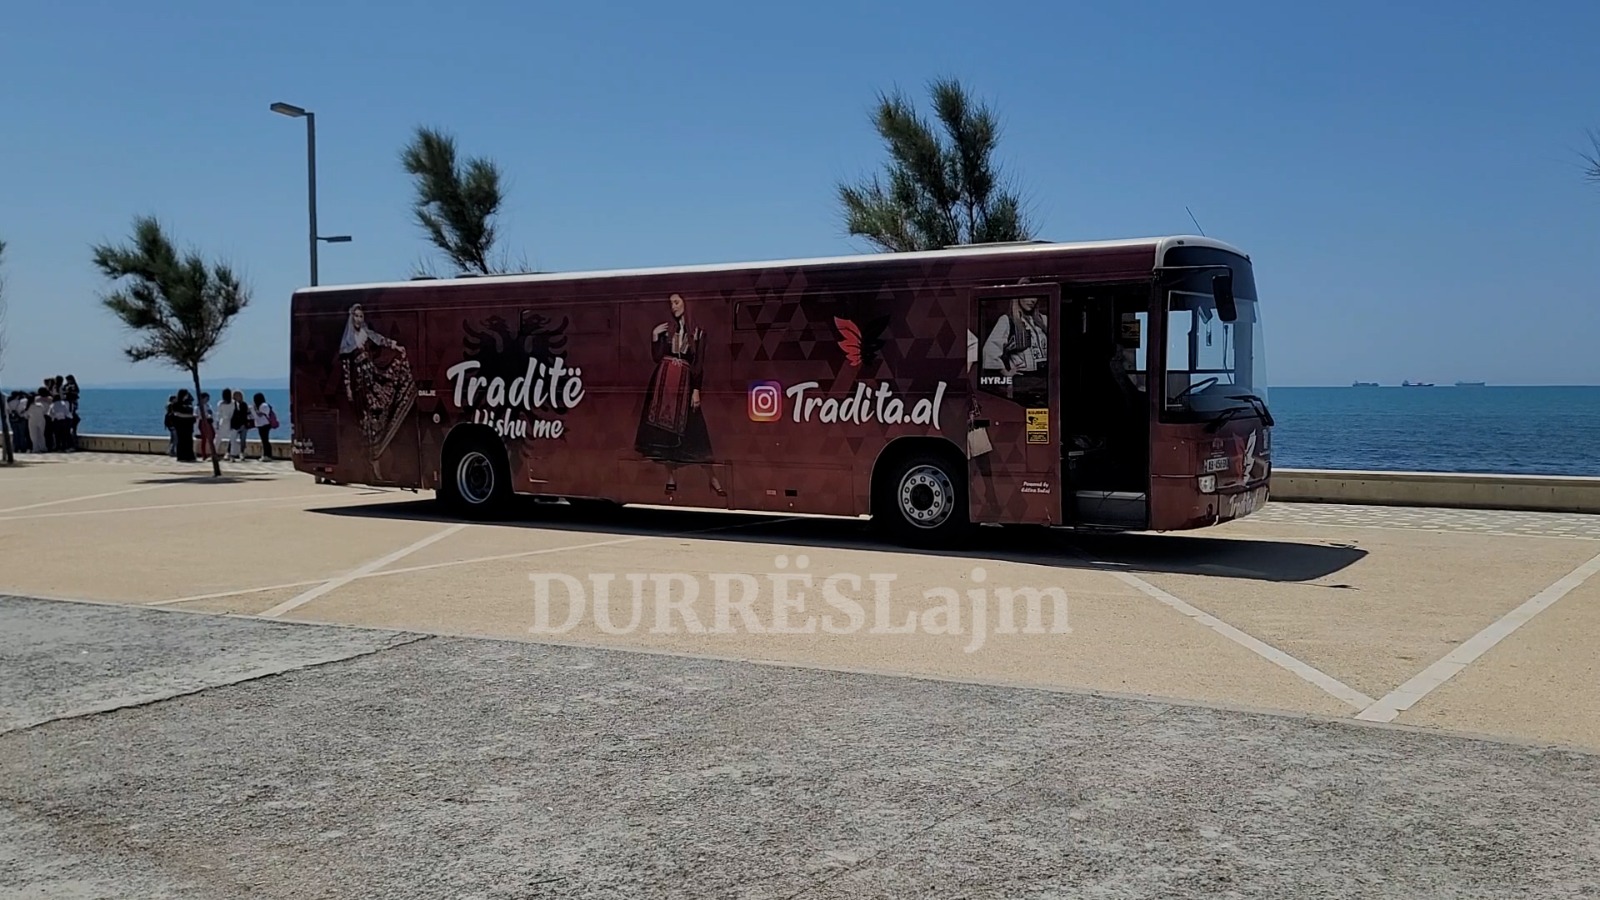 Një muze lëvizës që nuk duhet lënë pa vizituar në Durrës (VIDEO)